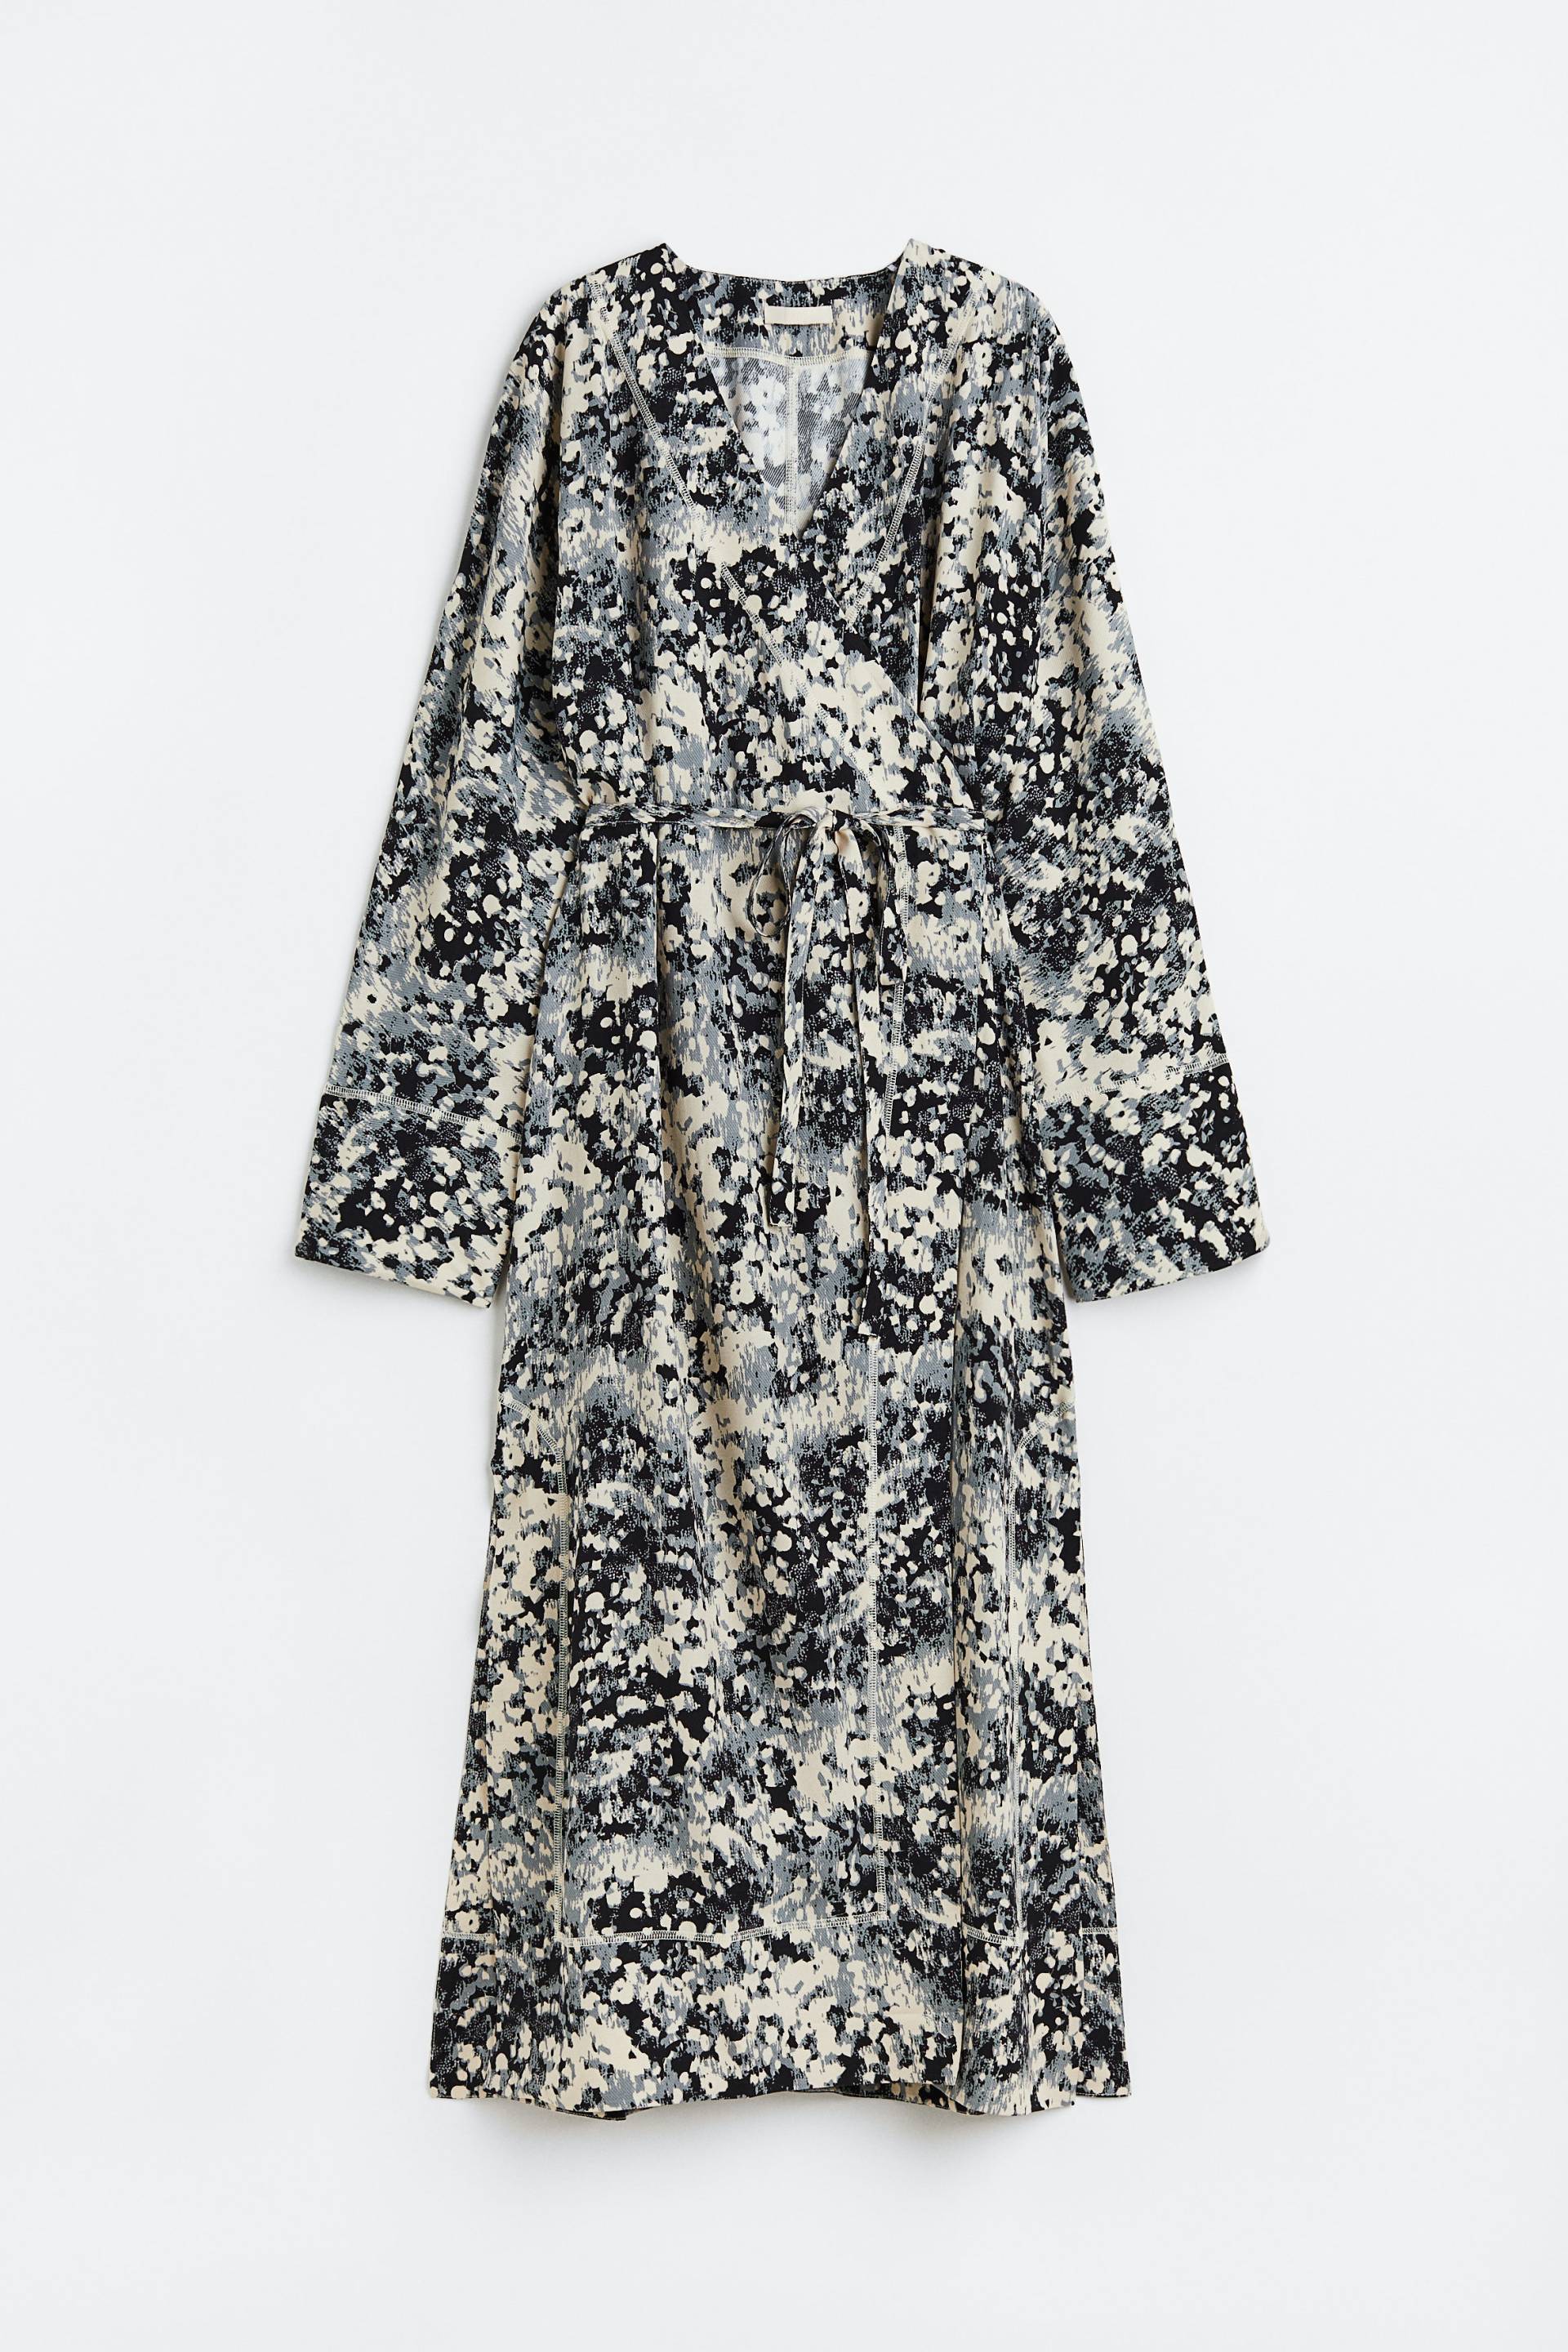 H&M Wickelkleid aus Satin Hellbeige/Gemustert, Alltagskleider in Größe XS. Farbe: Light beige/patterned von H&M